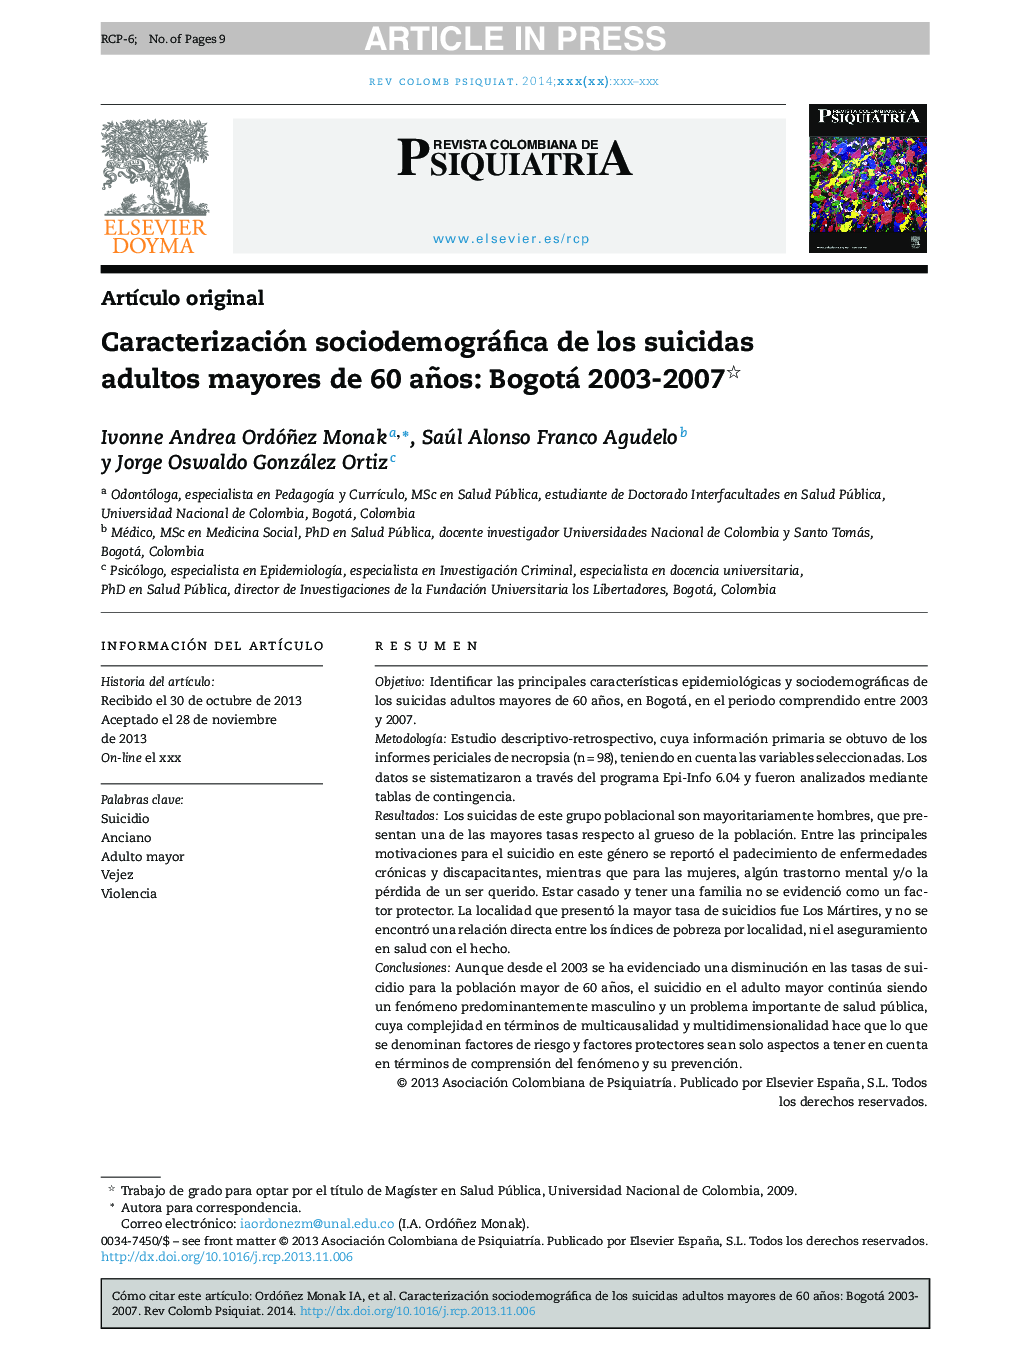 Caracterización sociodemográfica de los suicidas adultos mayores de 60 años: Bogotá 2003-2007